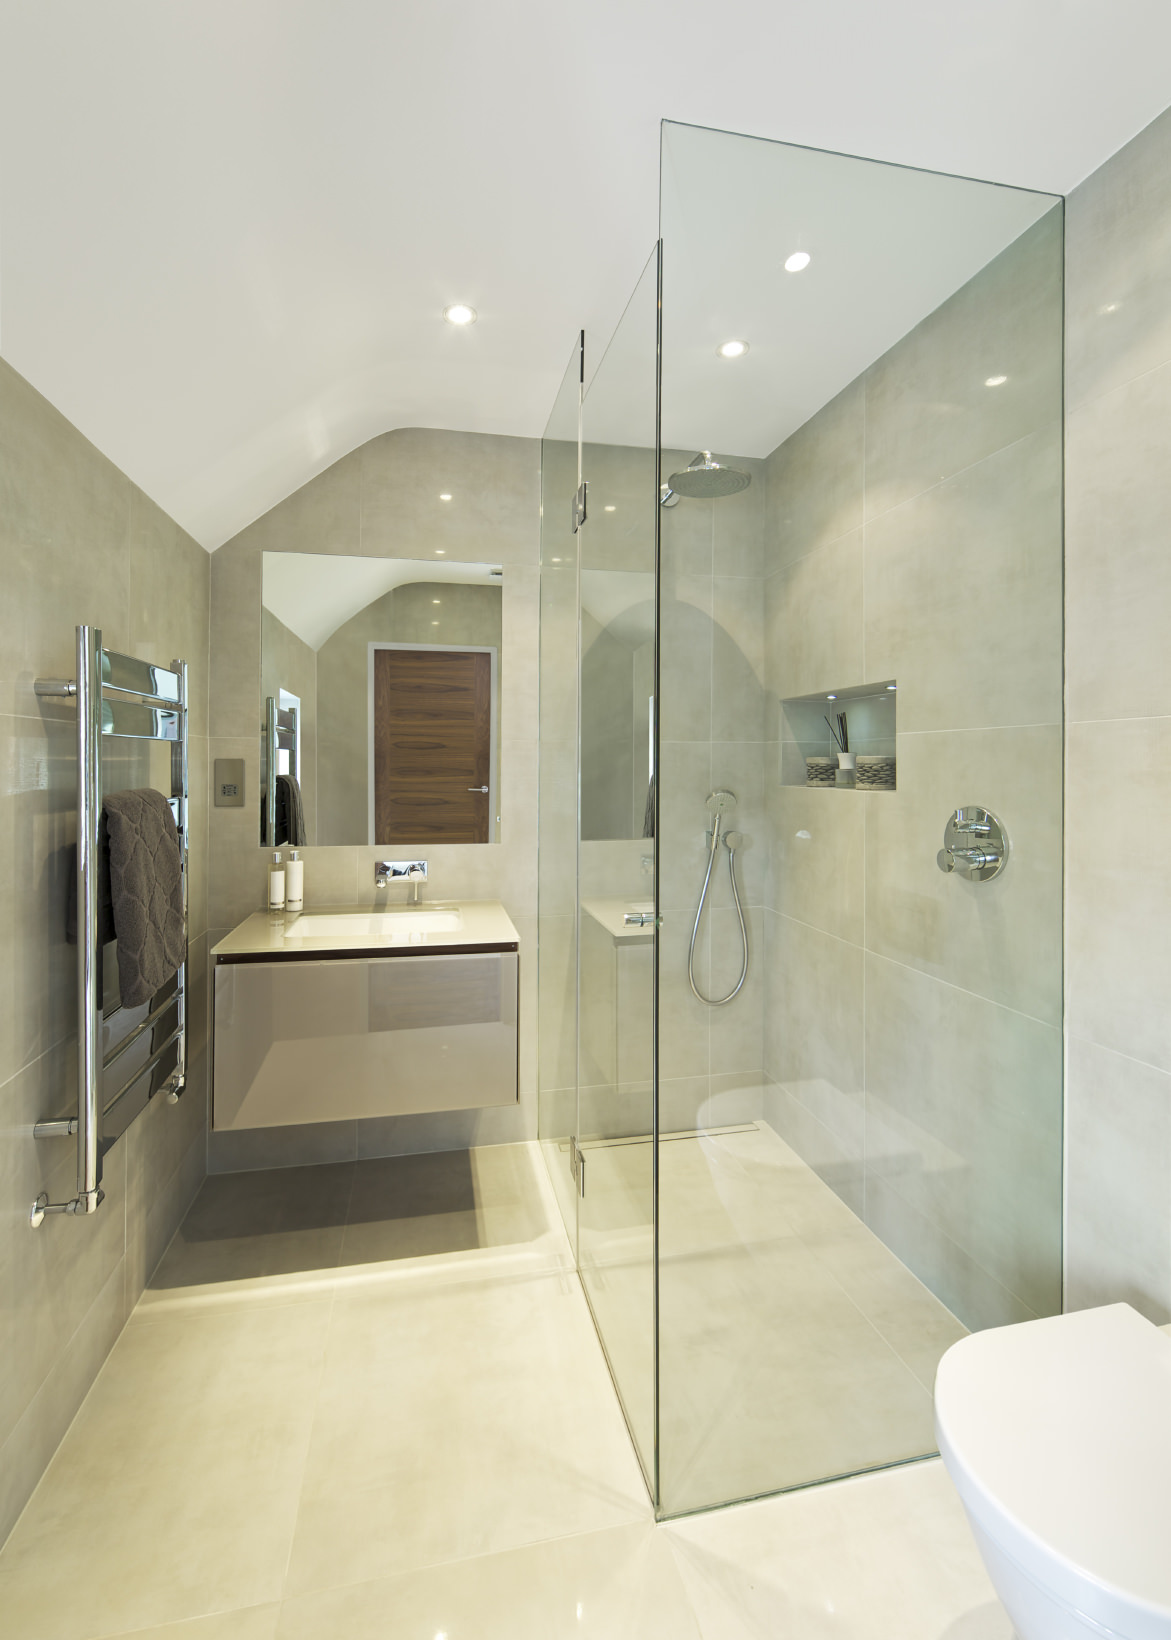 无框架的镜子,无框淋浴房浴室看起来比实际更宽敞。加入中性的瓷砖和你有一个时髦的,新鲜的浴室。